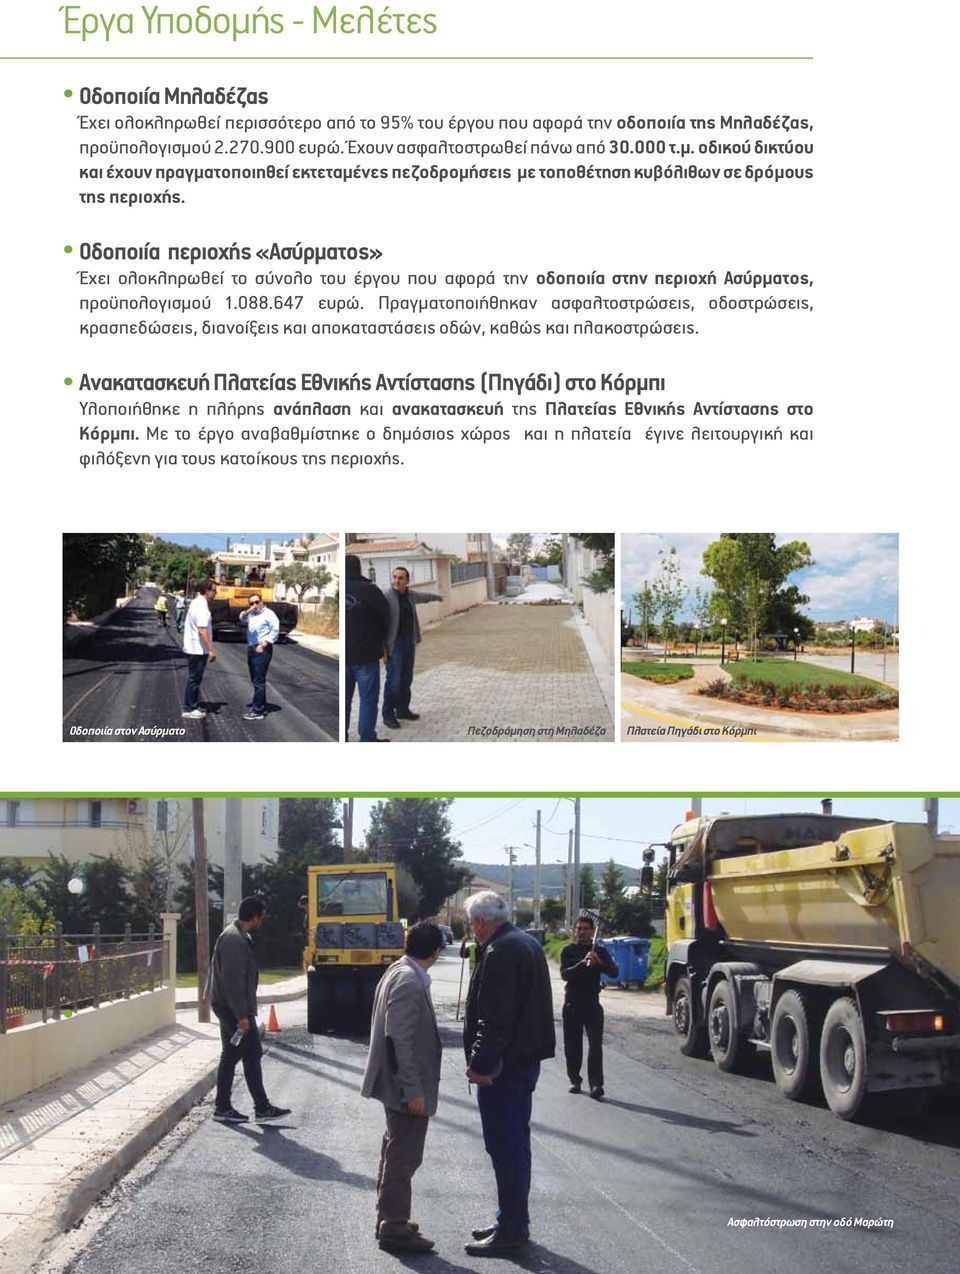 Οδοποιία περιοχής «Ασύρματος» Έχει ολοκληρωθεί το σύνολο του έργου που αφορά την οδοποιία στην περιοχή Ασύρματος, προϋπολογισμού 1.088.647 ευρώ.